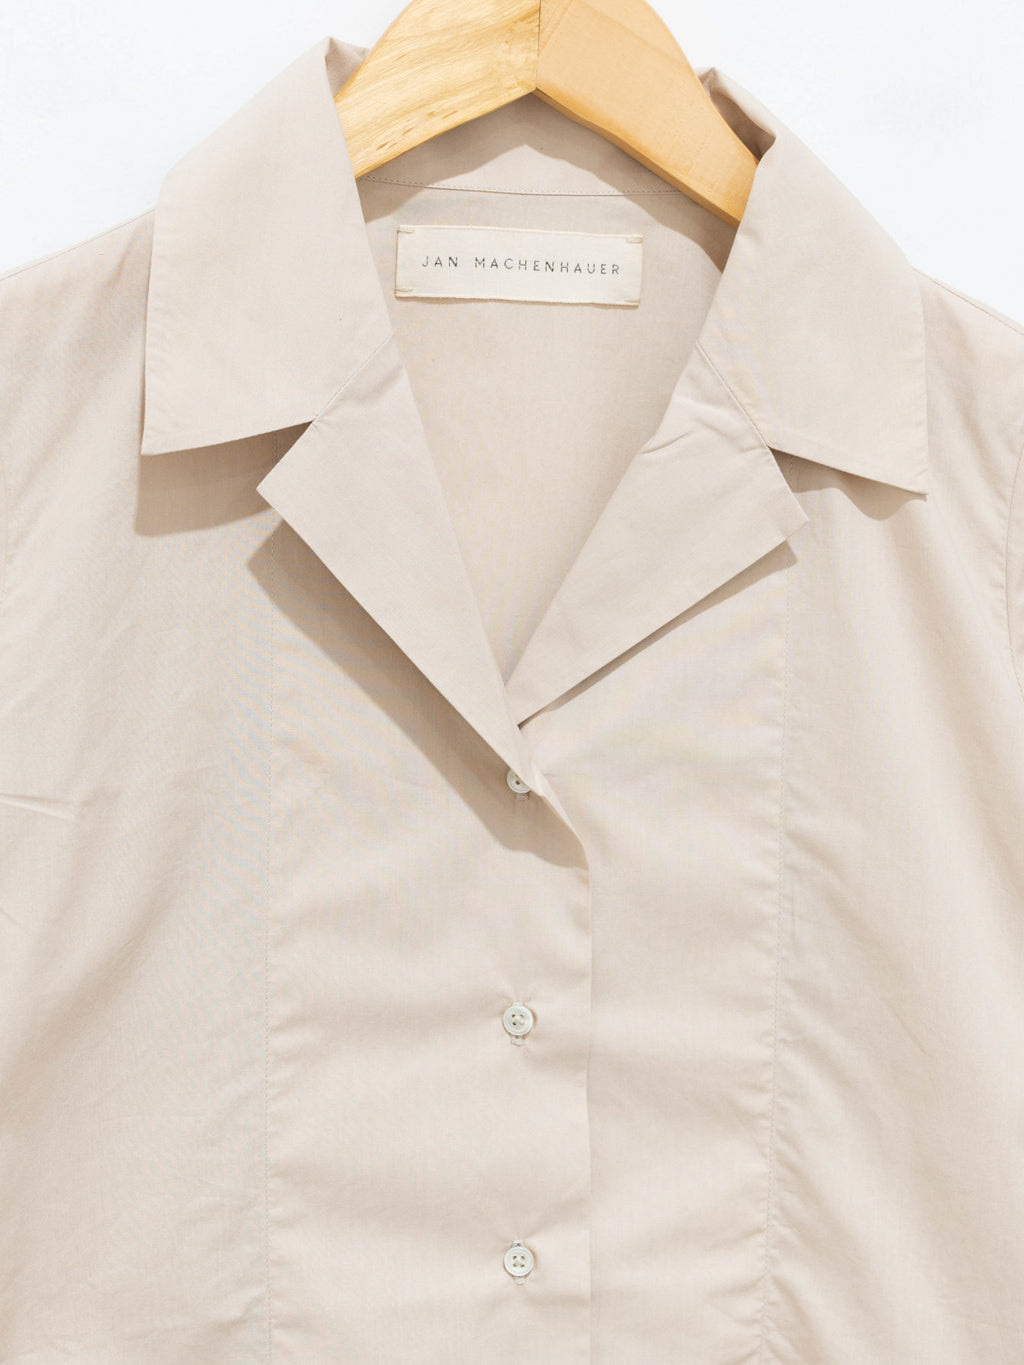 Namu Shop - Jan Machenhauer Ida Shirt - Almond Cotton Poplin